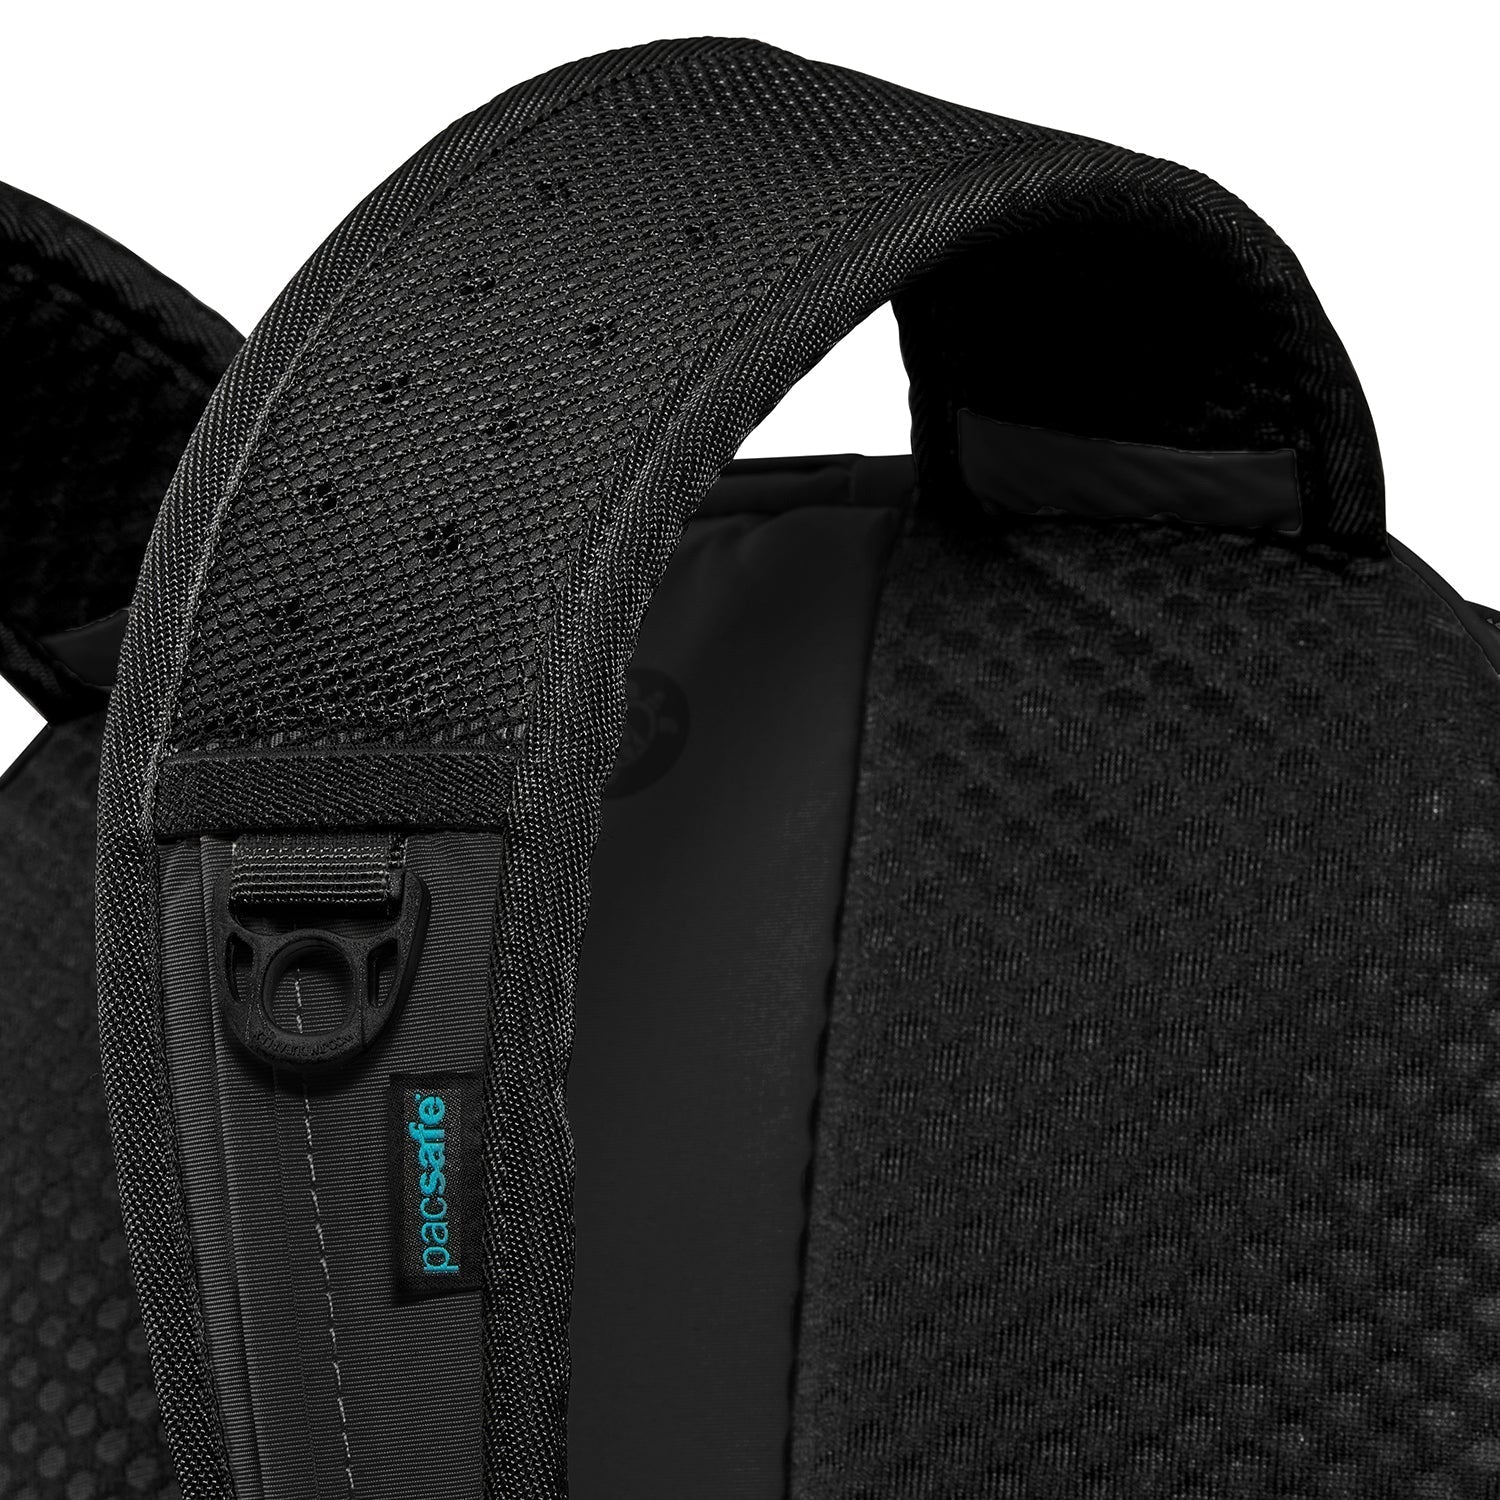 Pacsafe® ECO 25L anti-theft backpack | Pacsafe® - Pacsafe 